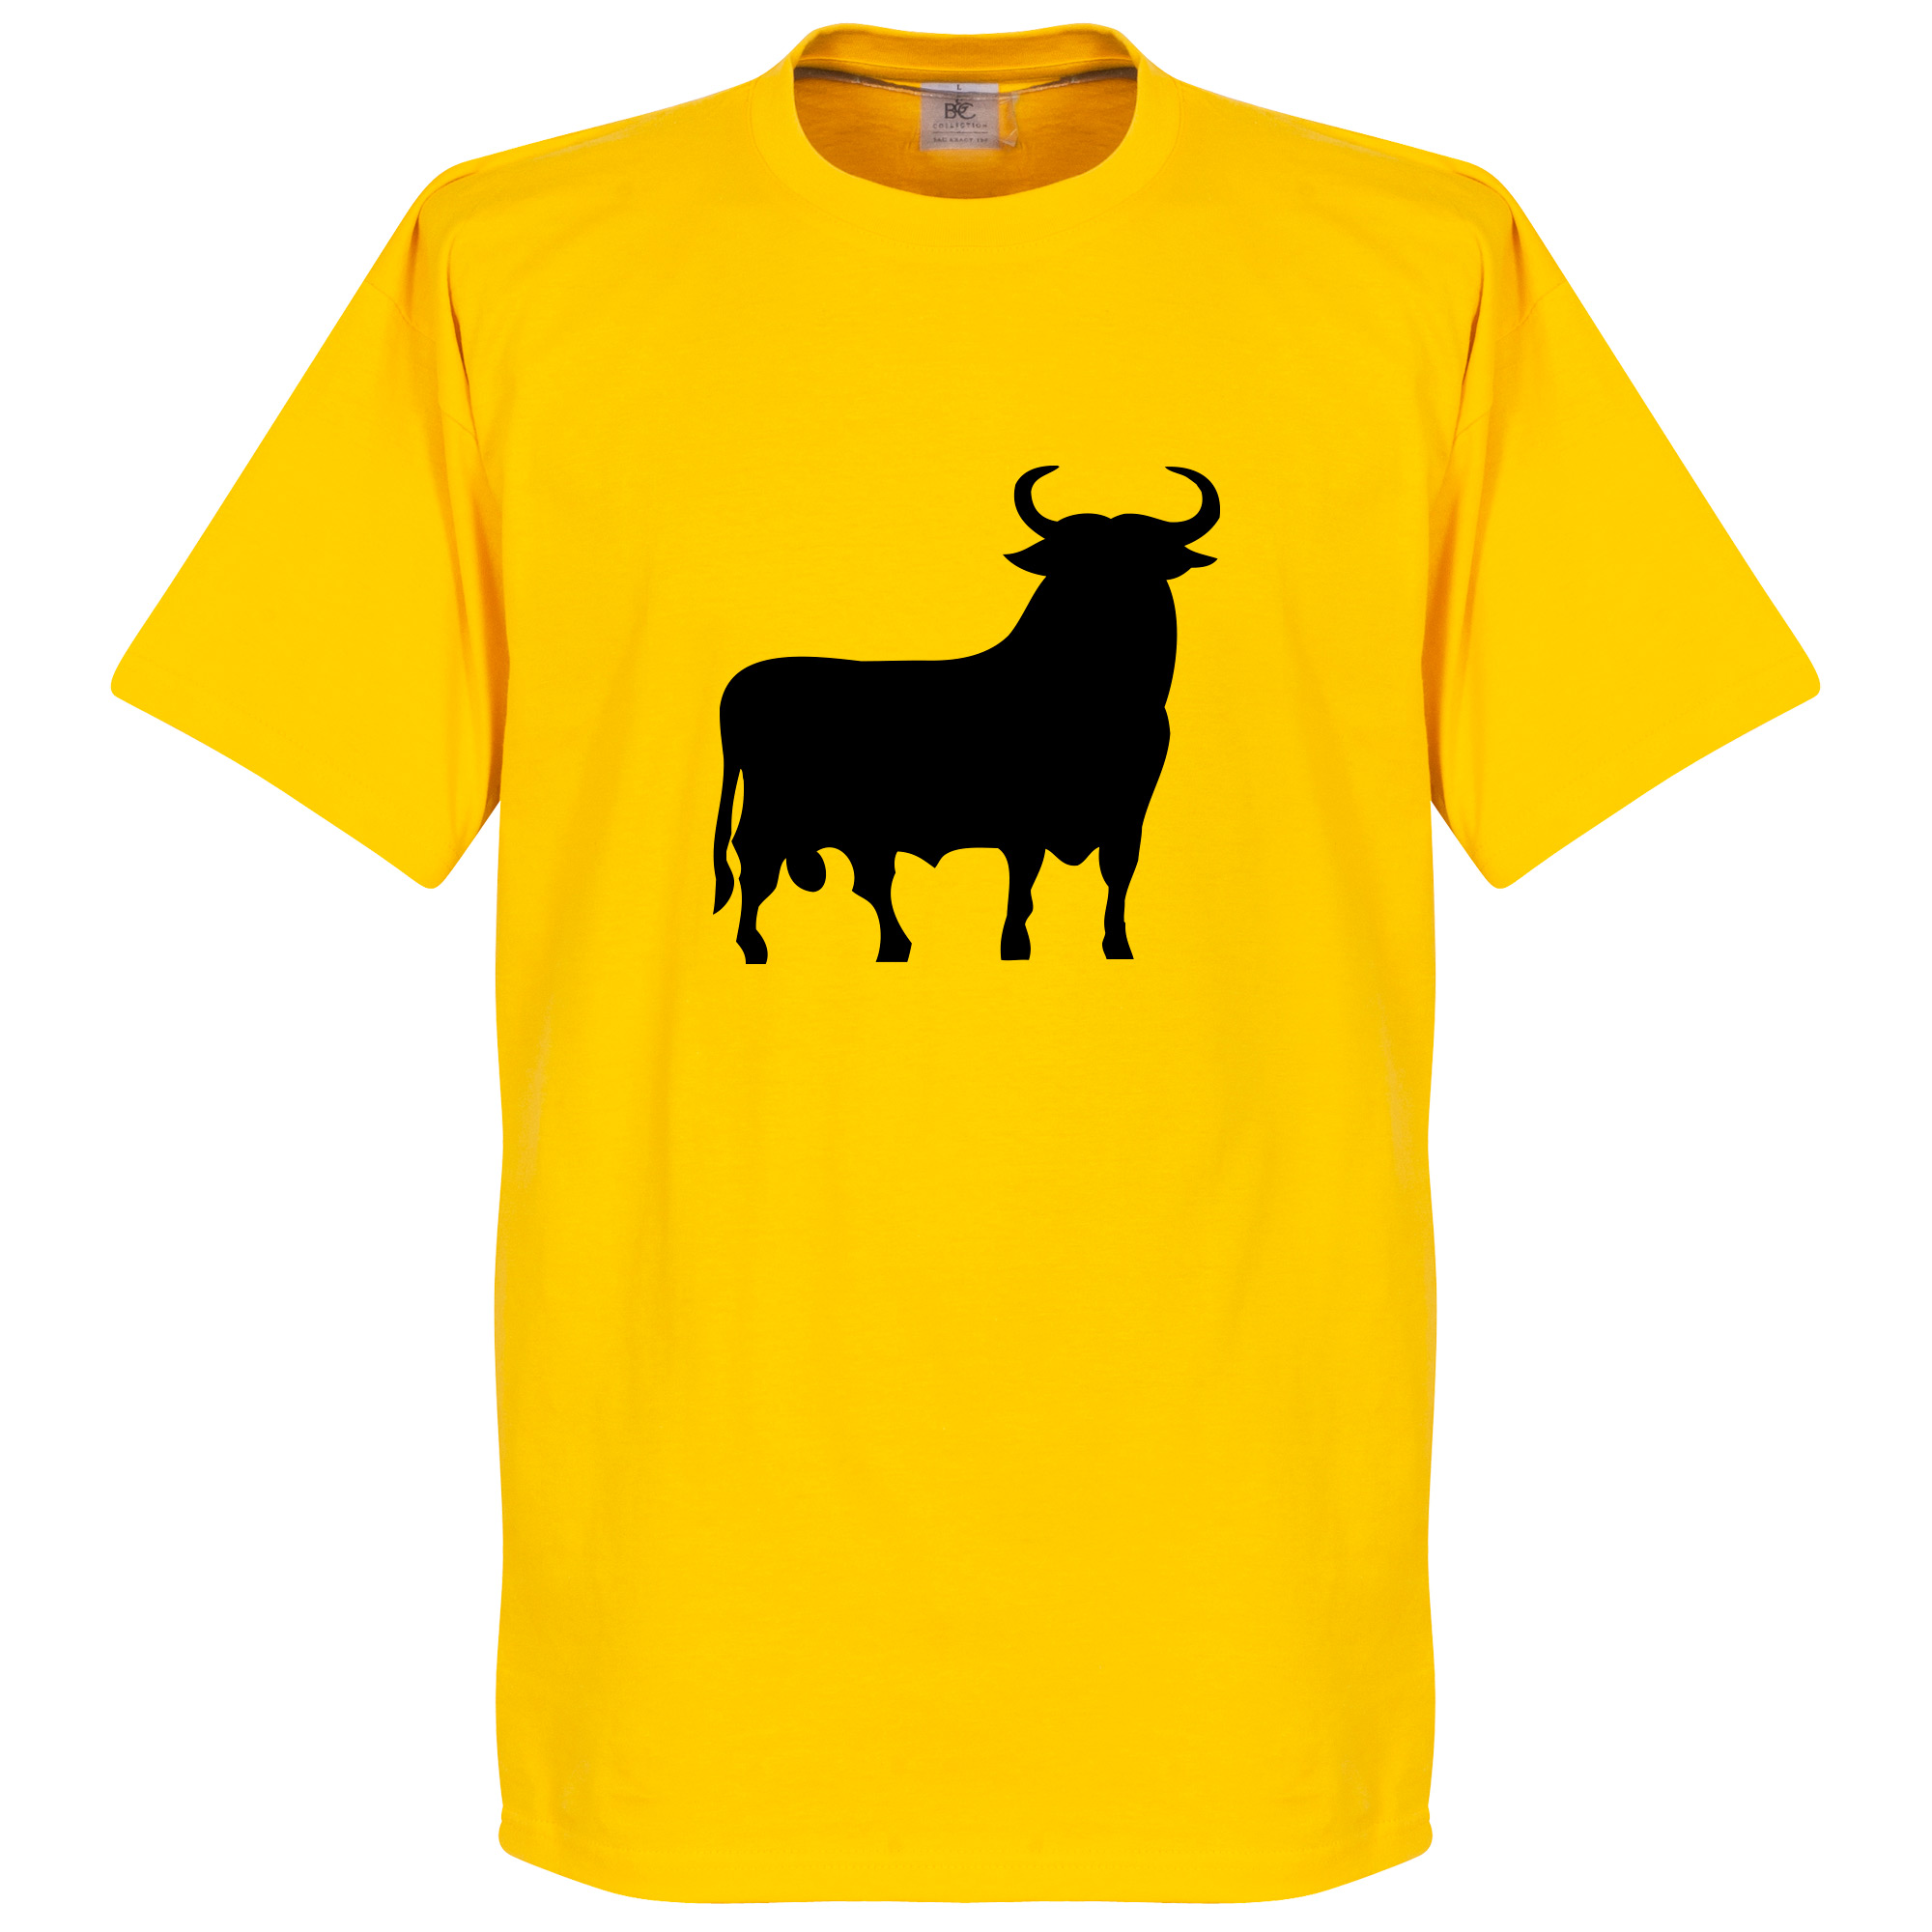 El Toro T-shirt S